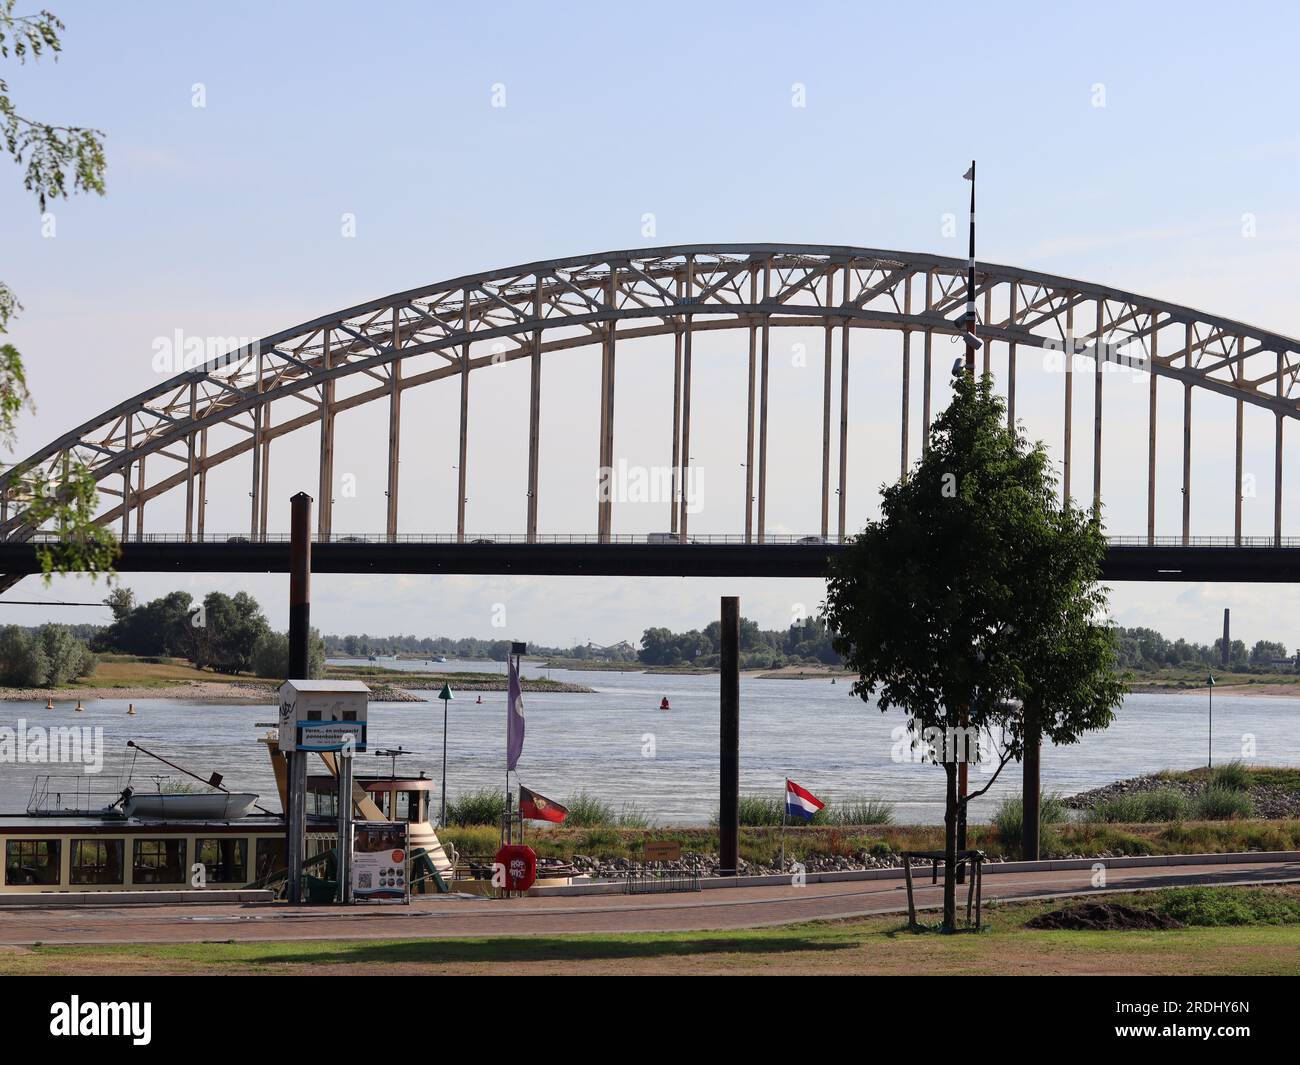 Waalbrug Bridge in Nijmegen, The Netherlands Stock Photo